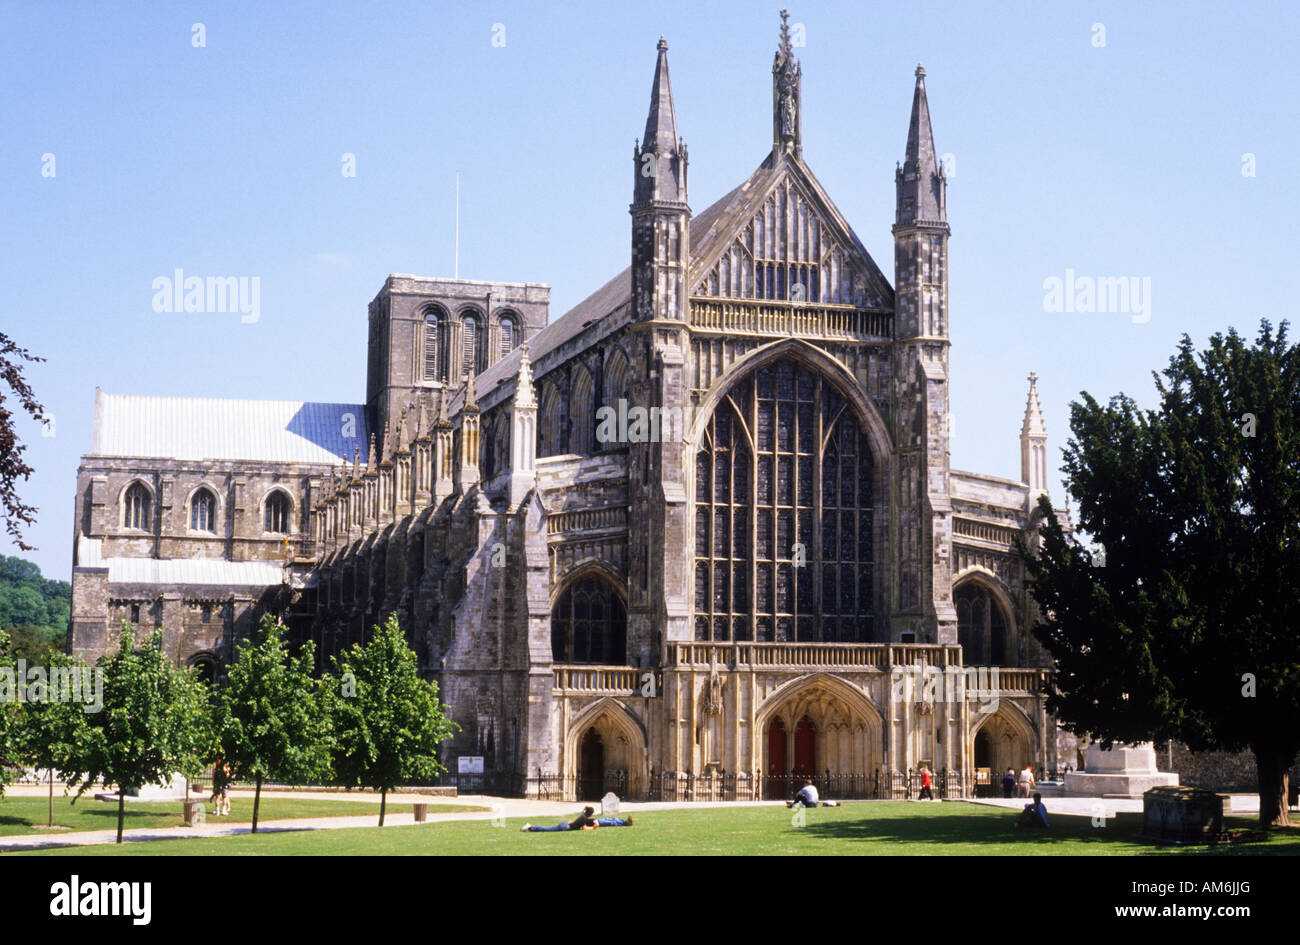 La cathédrale de Winchester Hampshire Angleterre architecture médiévale English UK Voyage tourisme Patrimoine Histoire du bâtiment avant de l'ouest Banque D'Images